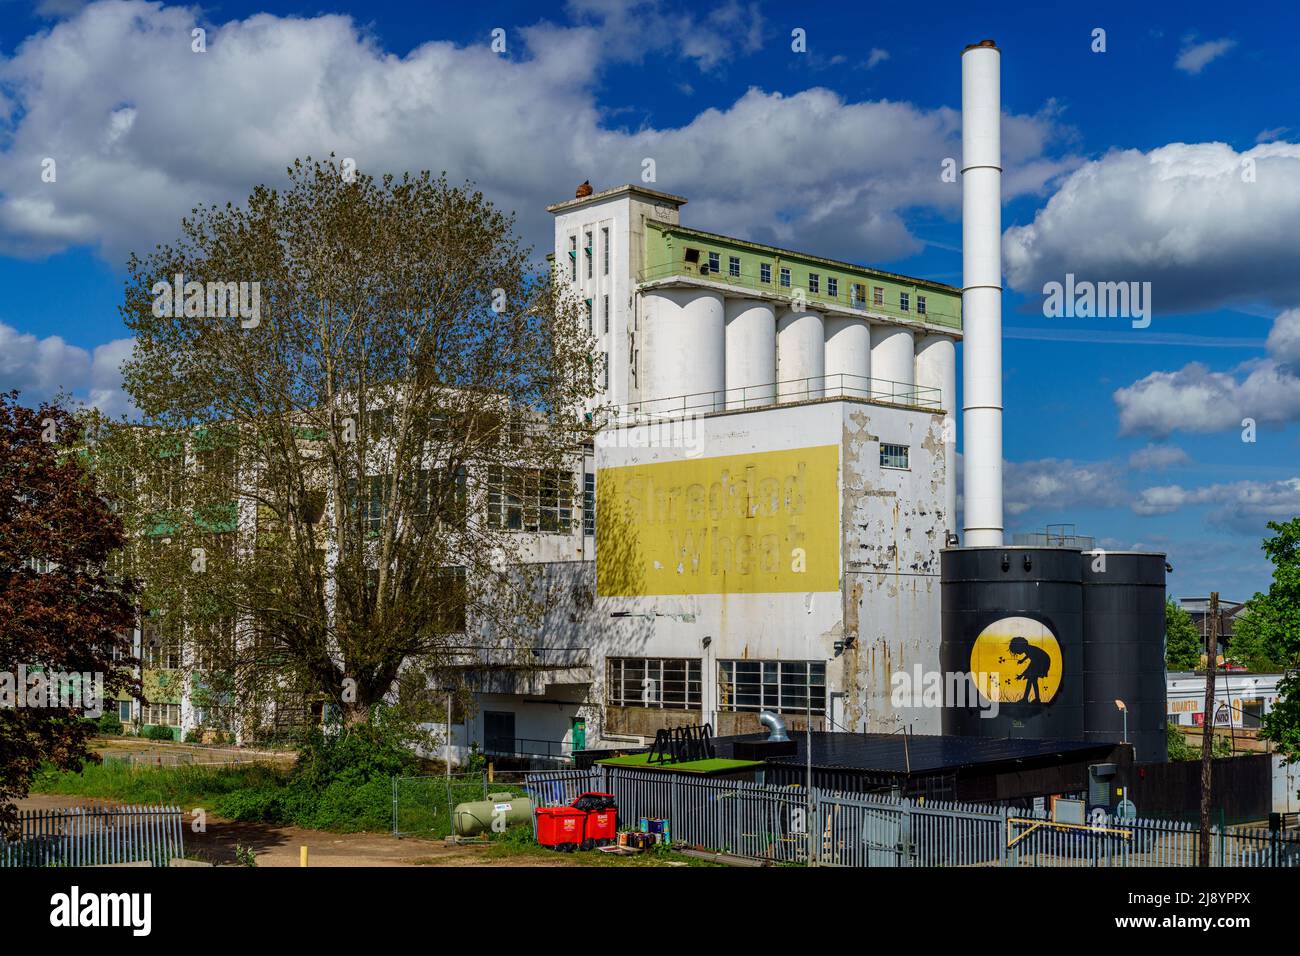 Ancienne usine de blé déchiquetée Nabisco, Welwyn Garden City, Herts, Royaume-Uni. Abandon en attente de réaménagement. Construit en 1926, l'architecte Louis de Soissons Grade 2. Banque D'Images